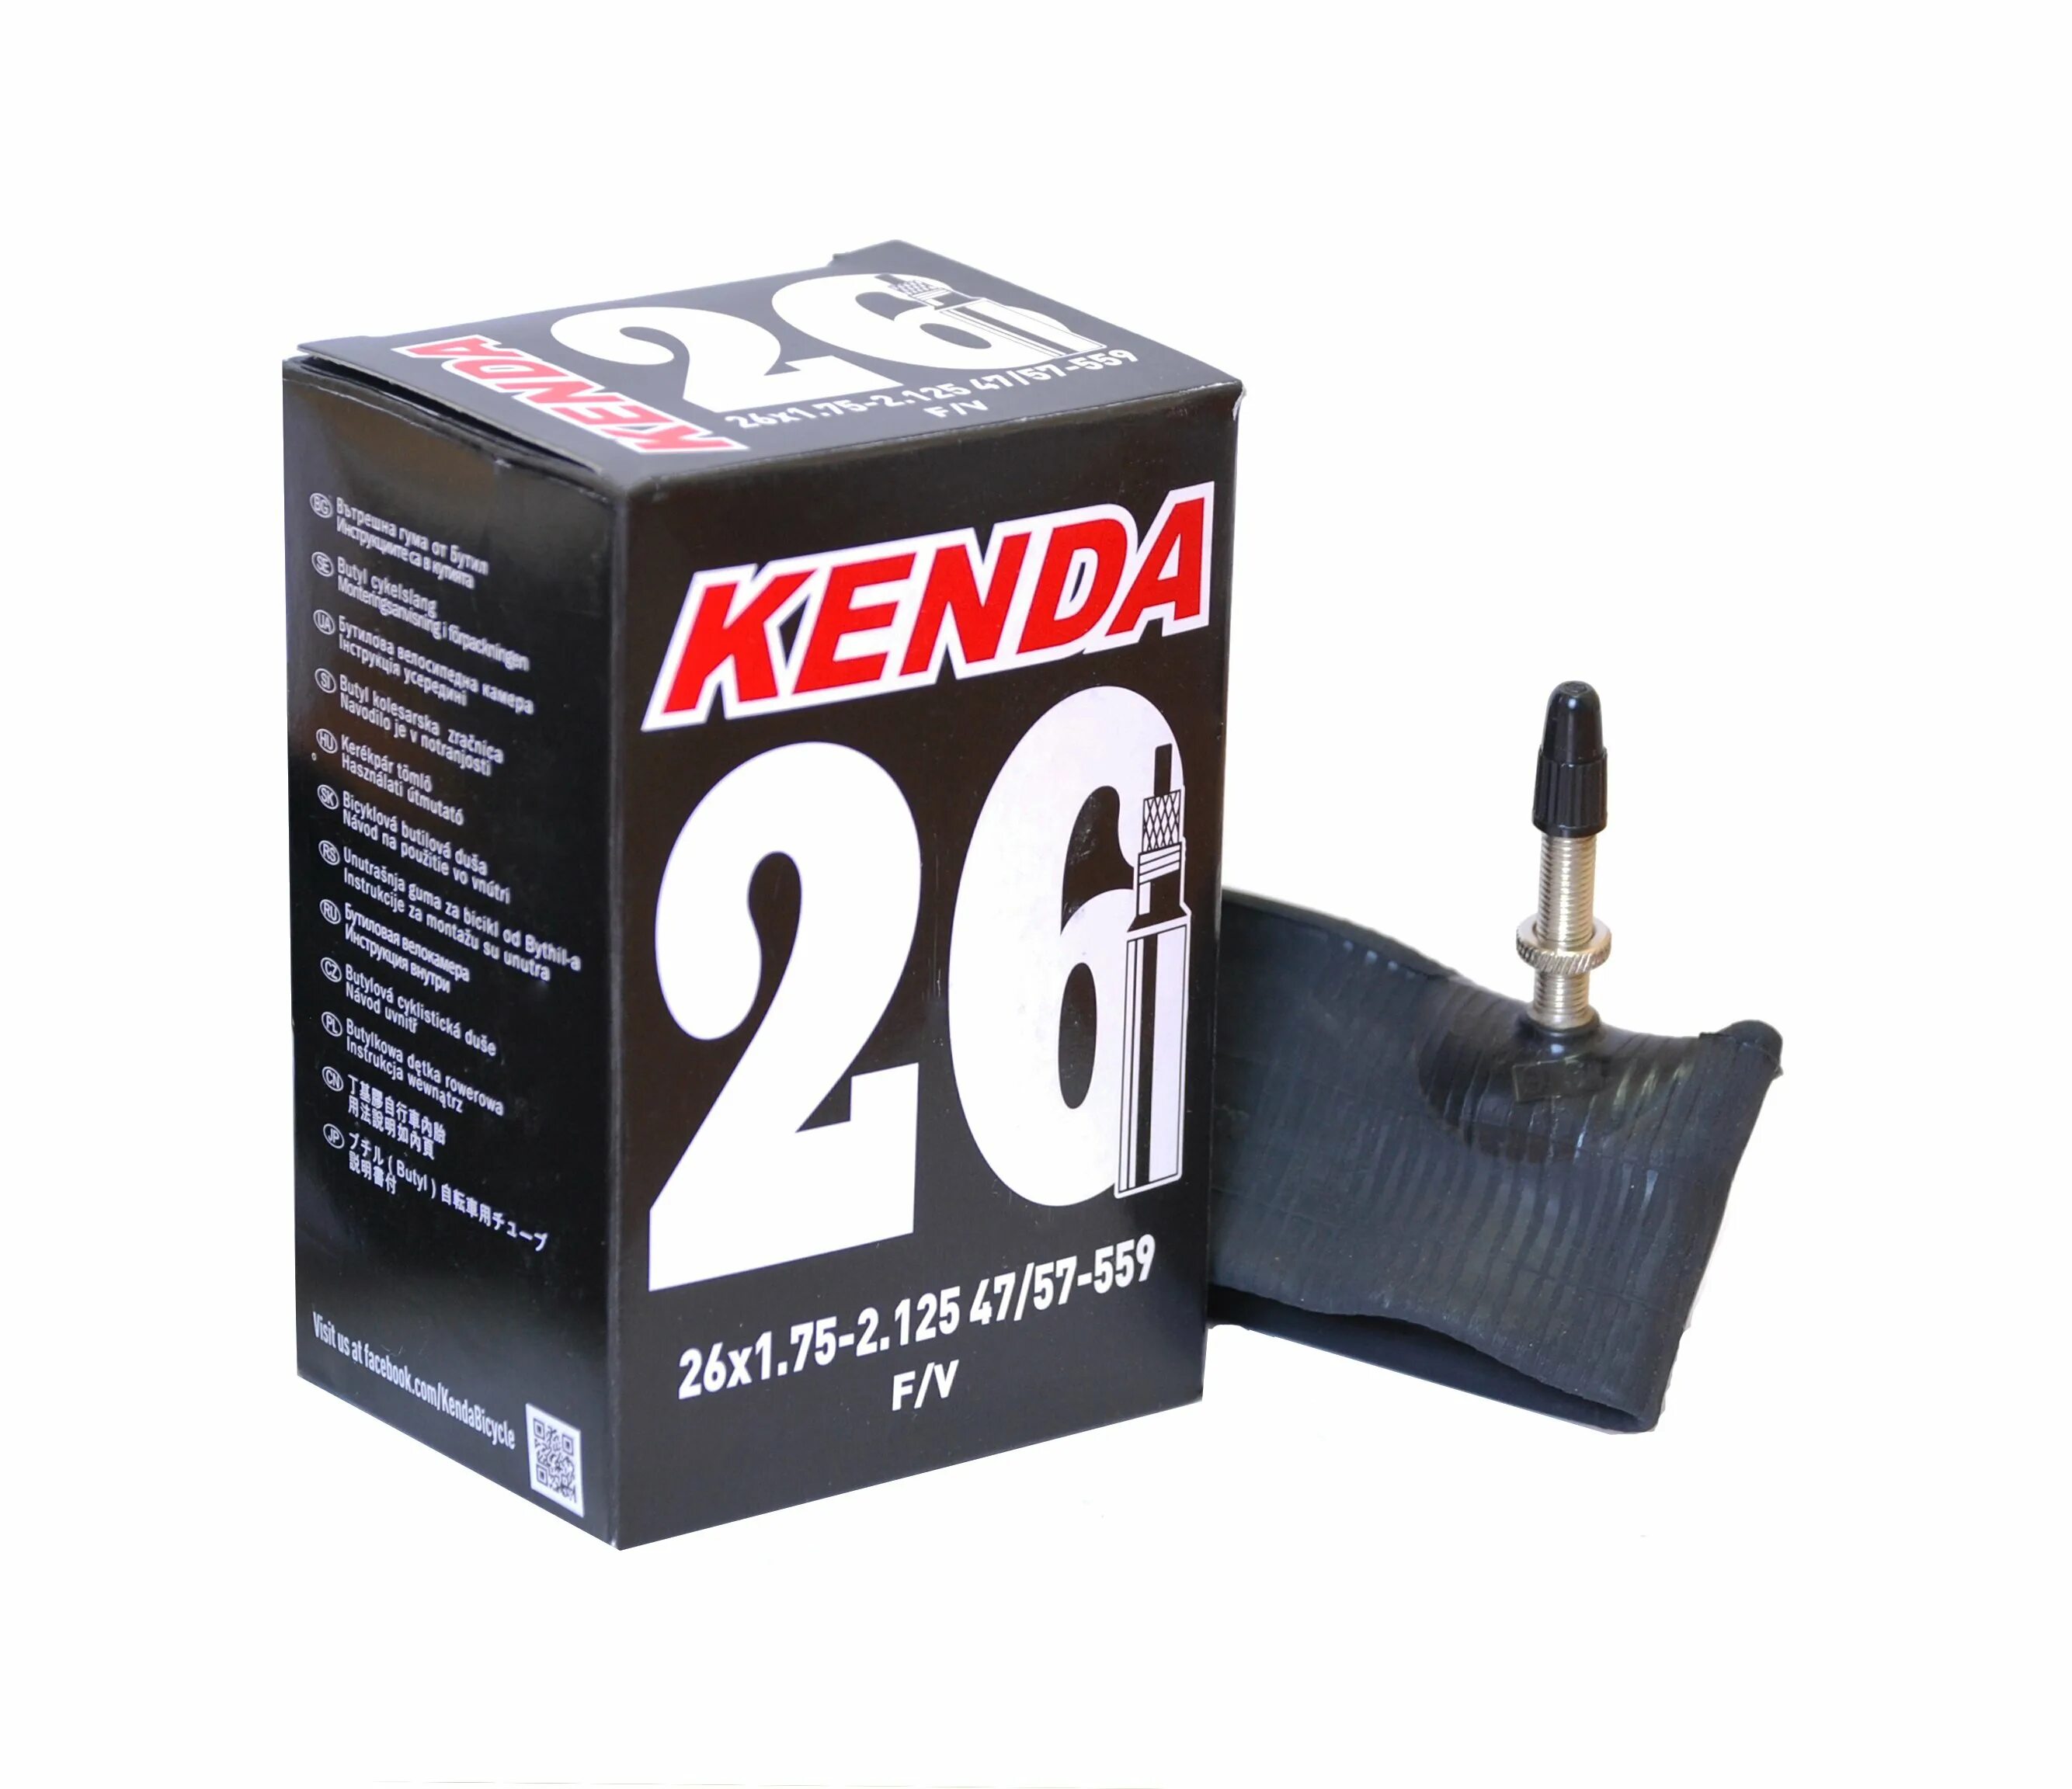 Камера 26. Велокамера Kenda 26x1.75-2.125. 57--559 Kenda. Kenda 26x1.75-2.125 47/57-559. Камера 26 авто 1,75-2,125 (47/57-559) Kenda.